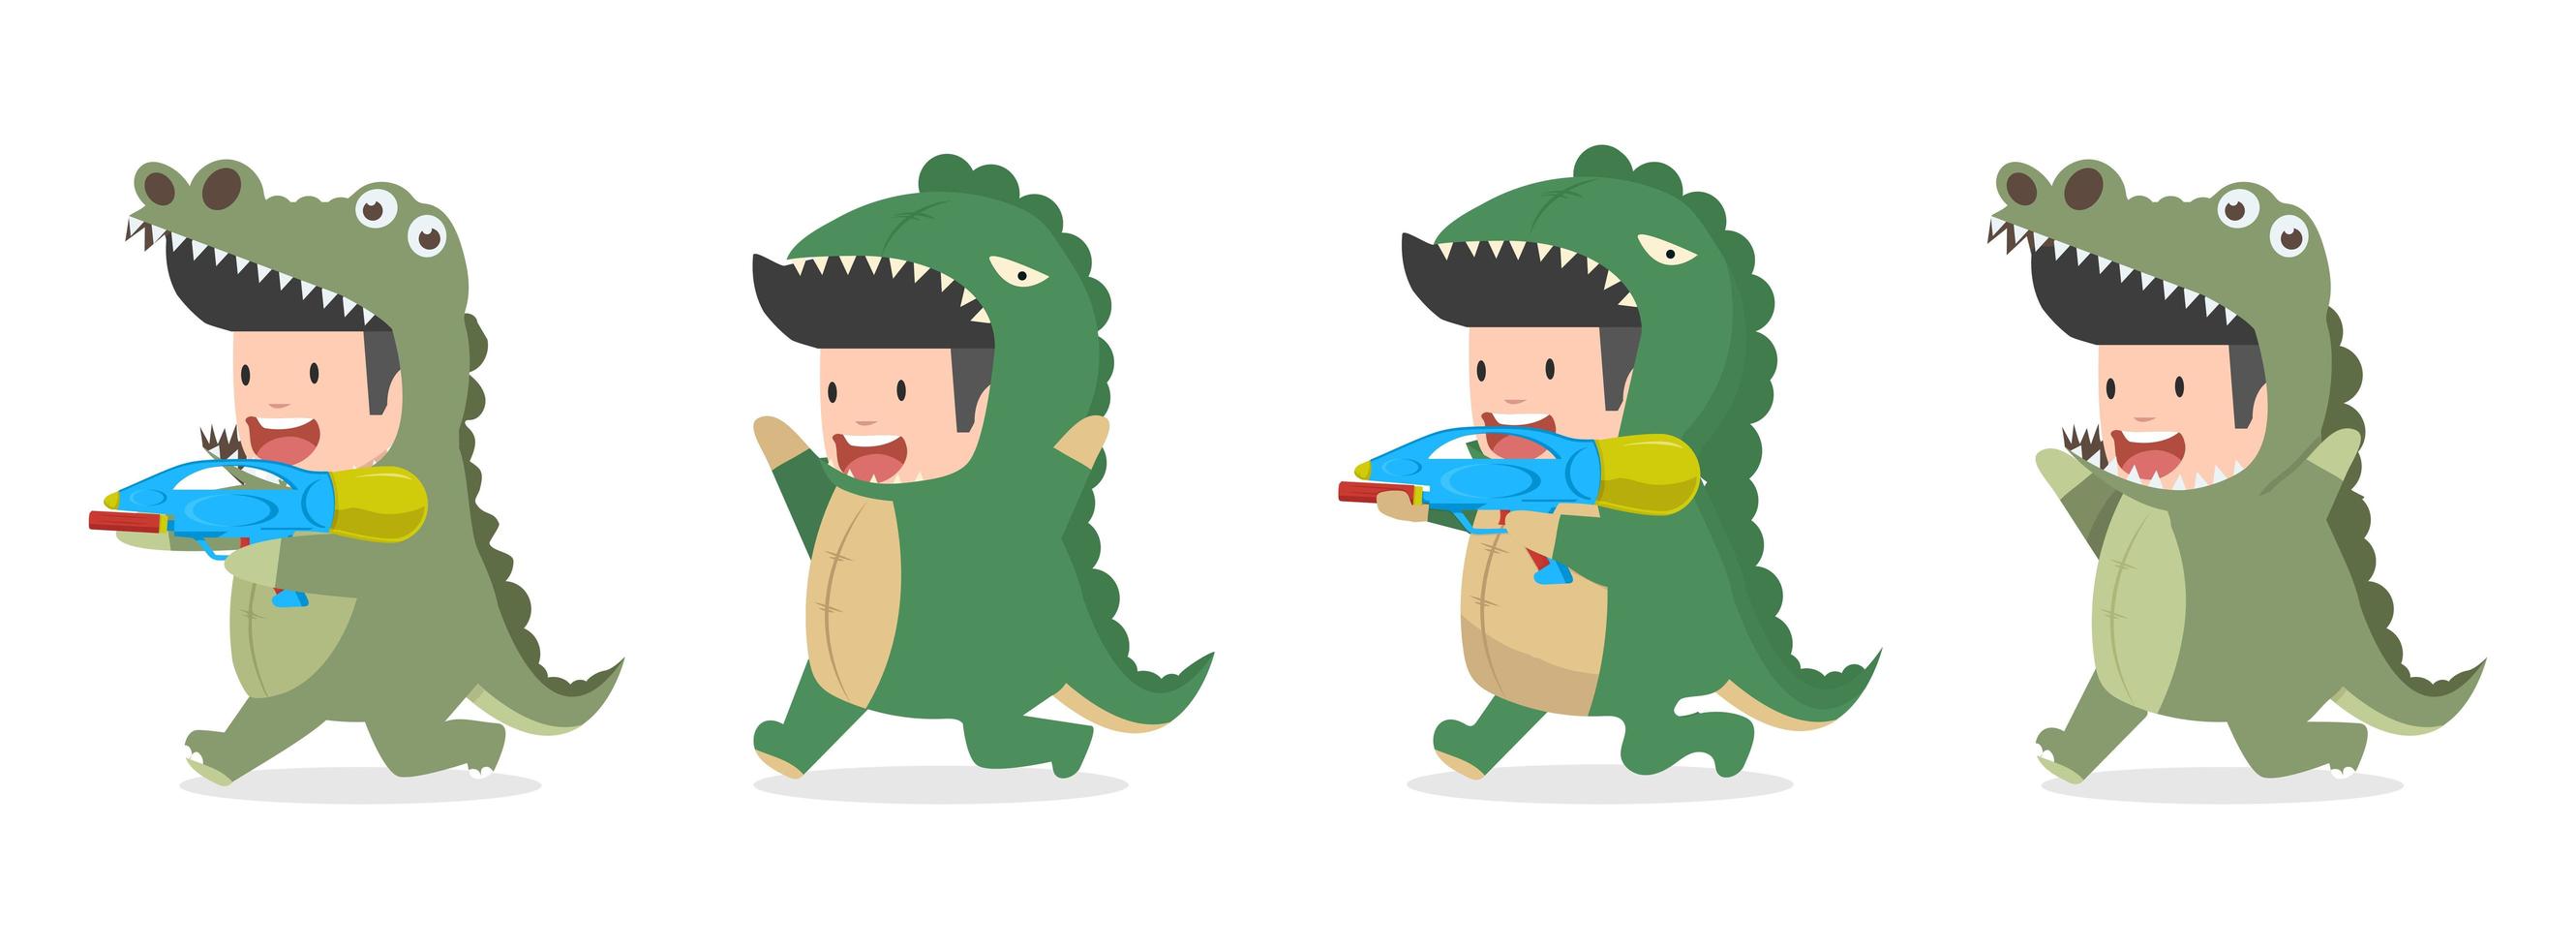 Desenho de criança com fantasia de crocodilo e dinossauro vetor